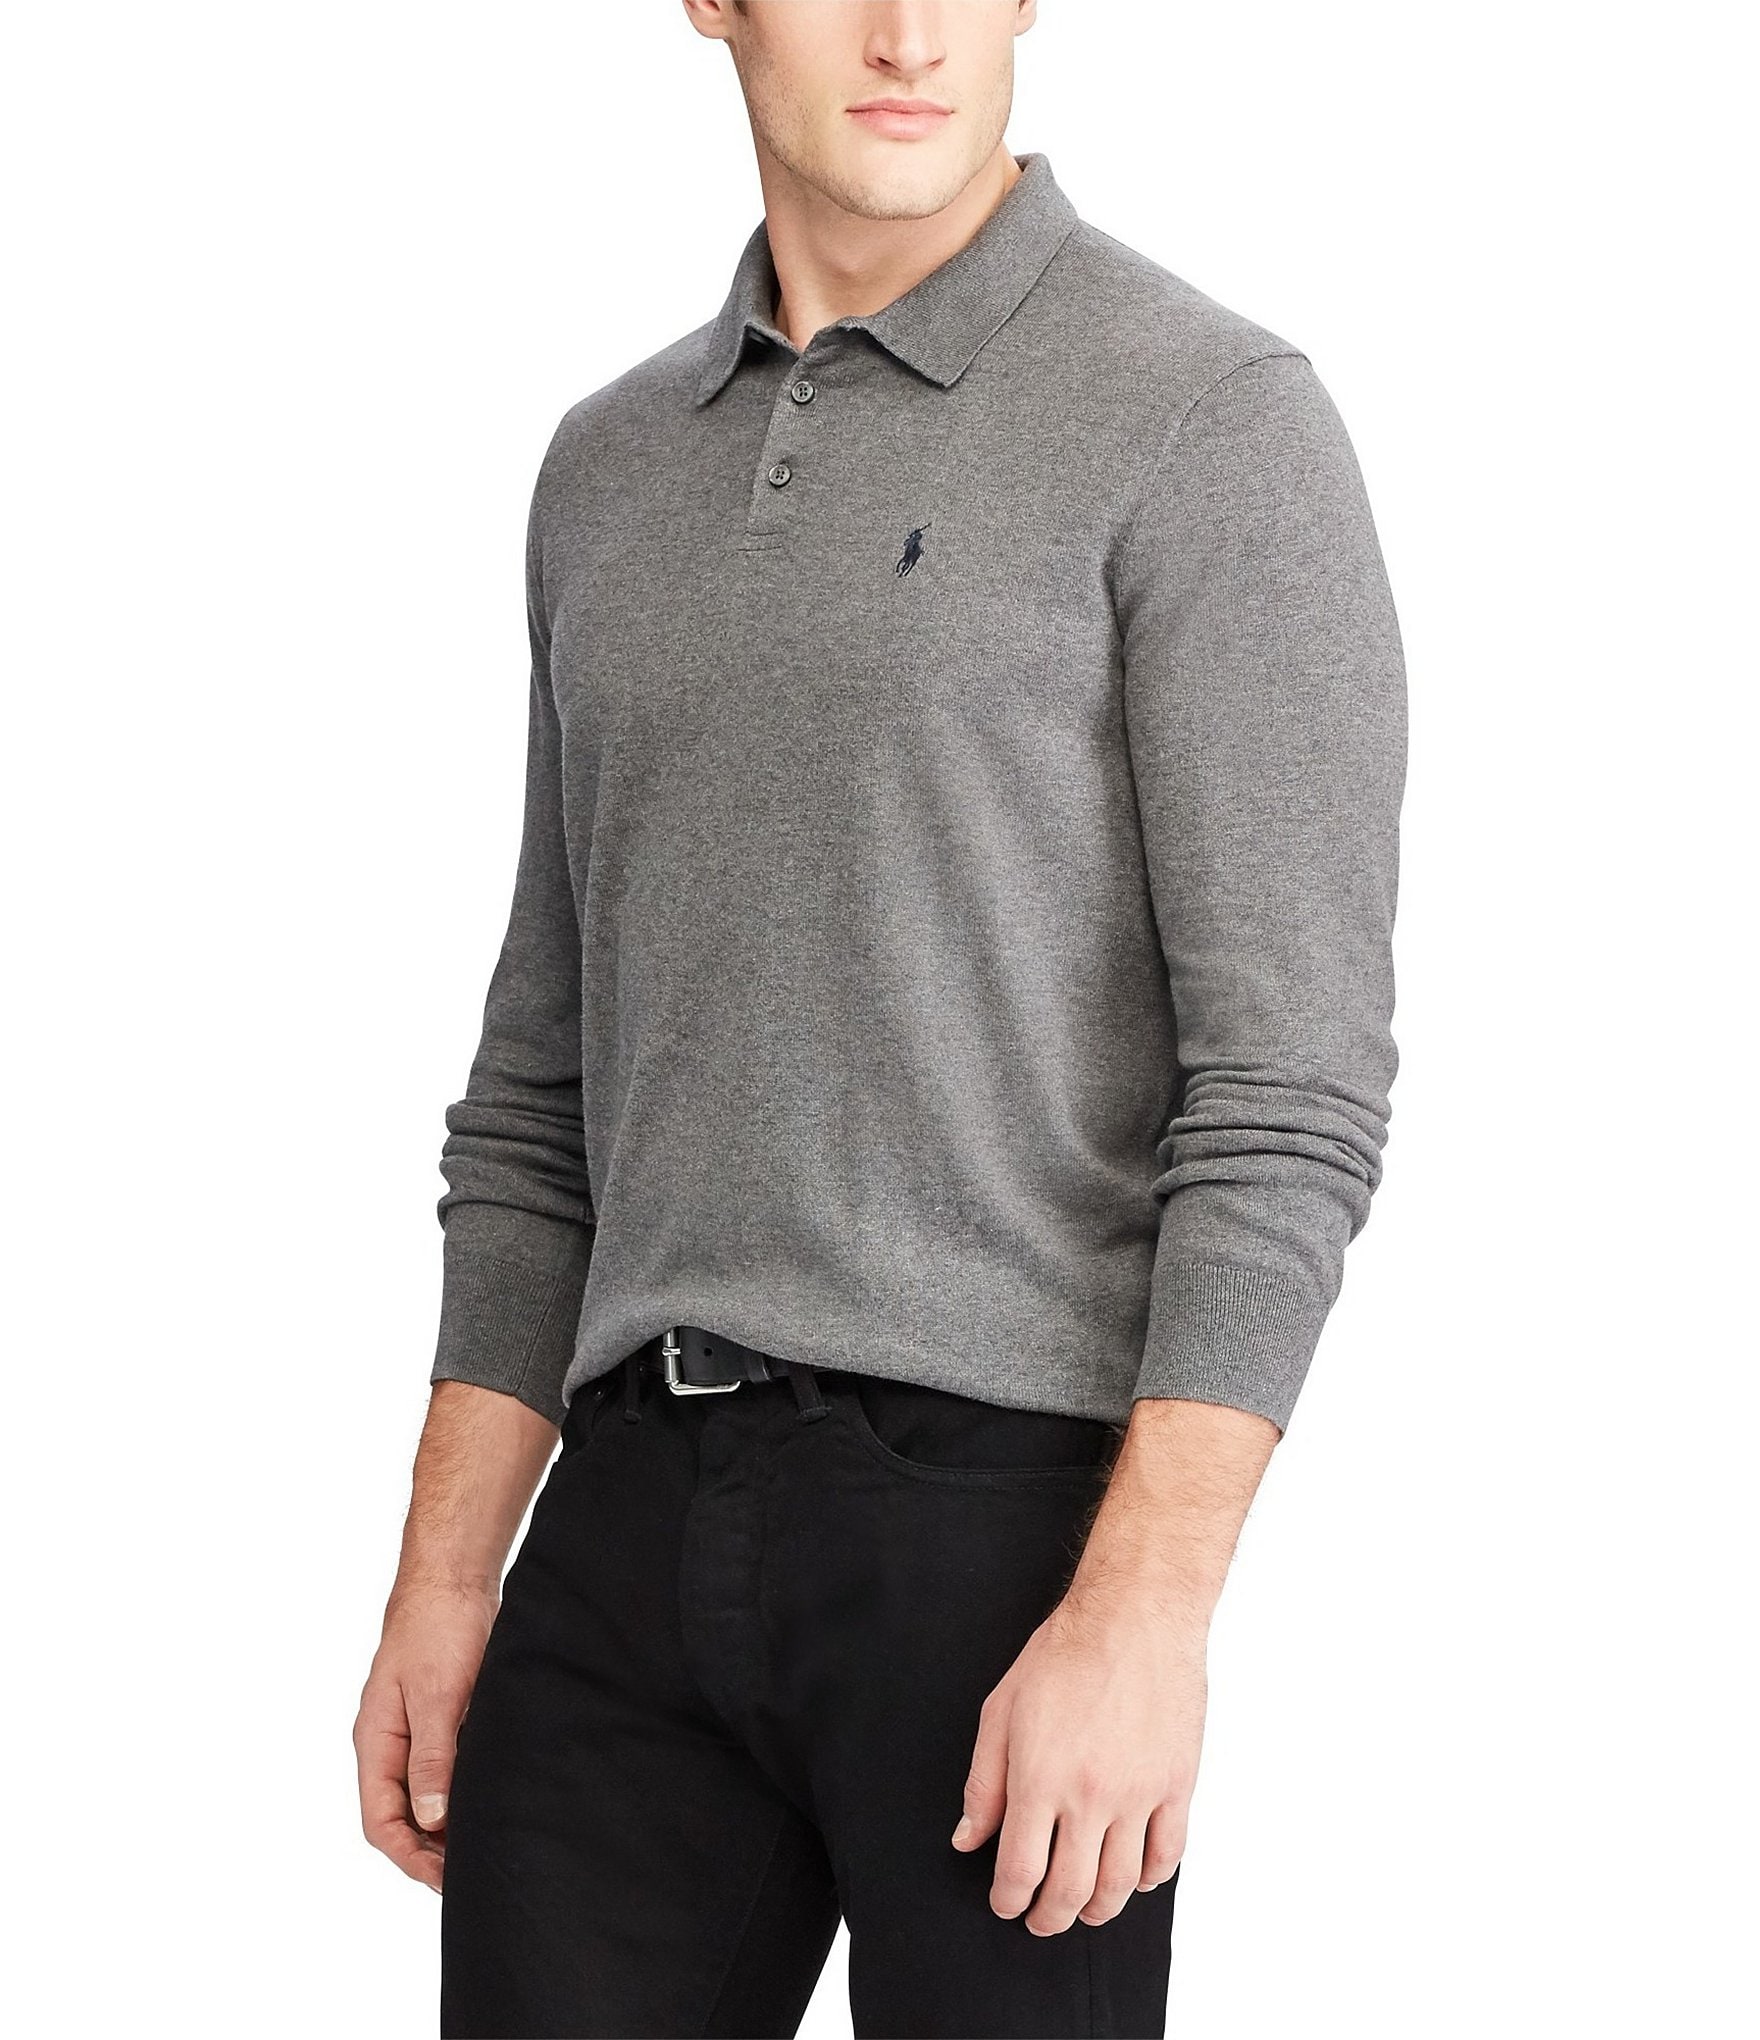 Men's Clothing & Accessories: Ralph Lauren Men's Sweaters Dillards